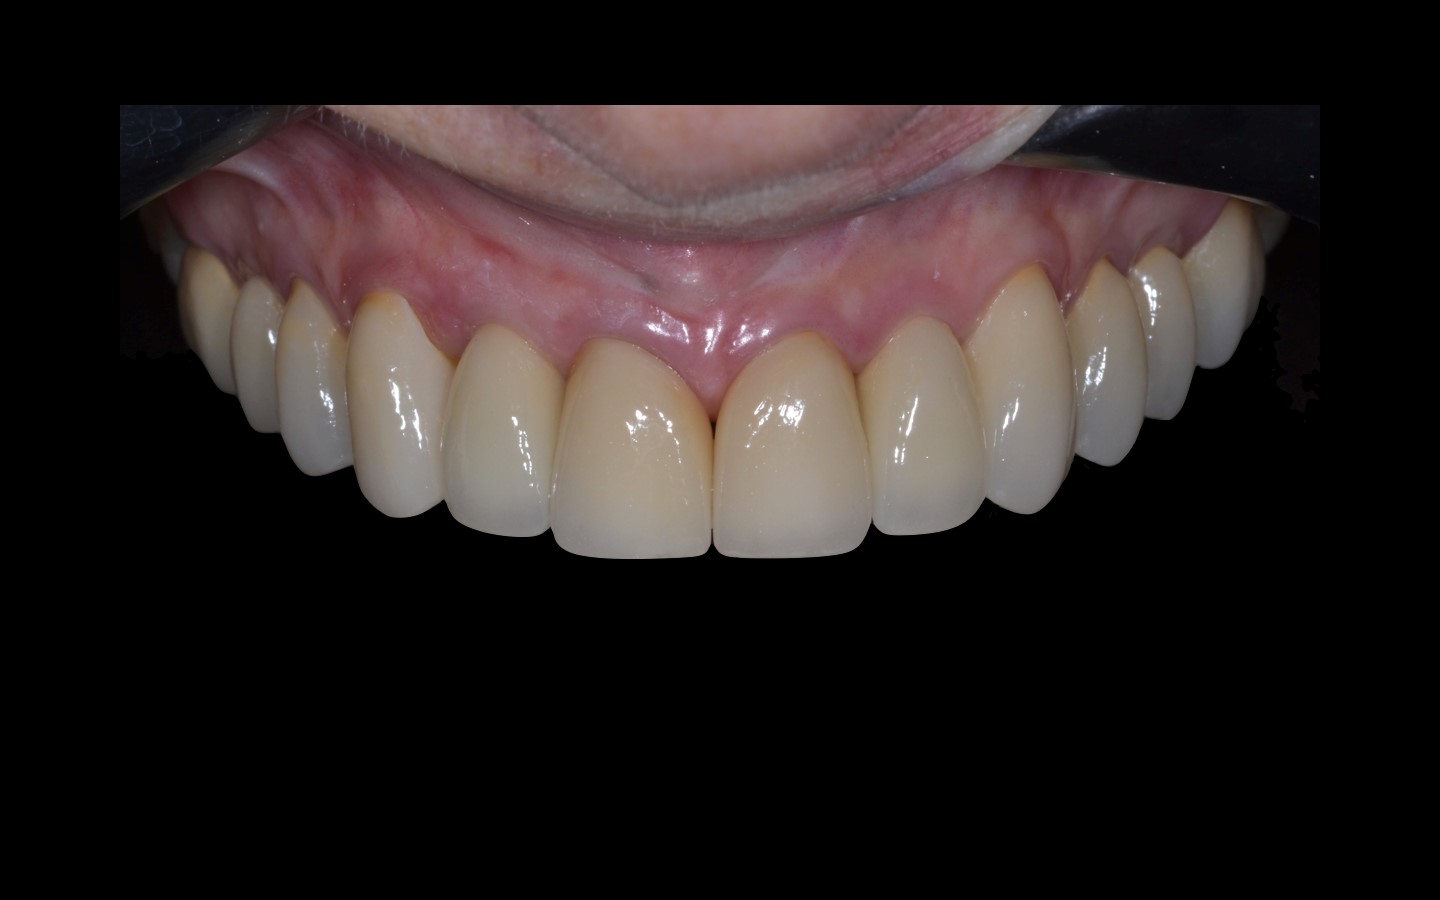 image22 - Reabilitação dento-alveolar com implante Arcsys, enxerto conjuntivo e substituto ósseo Nanosynt